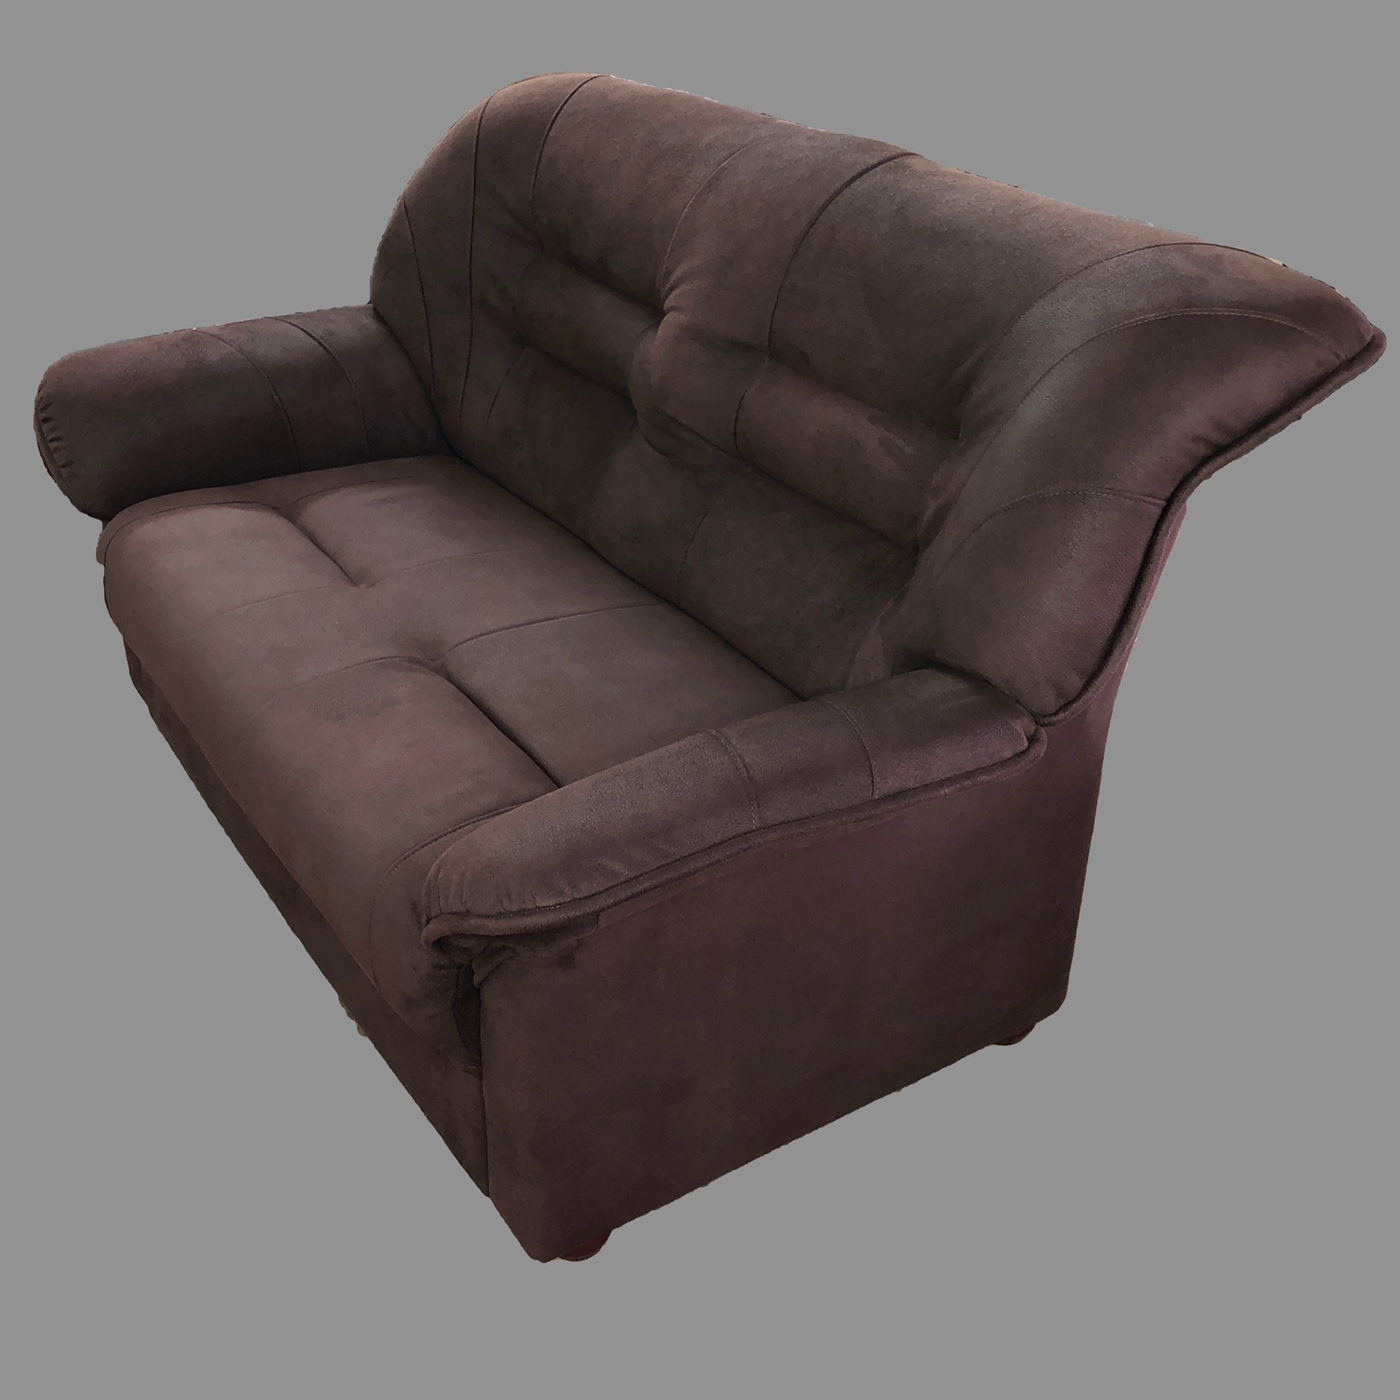 Прямой диван диван Честер, механизм нераскладной, 132х70х86 см оранжевый.